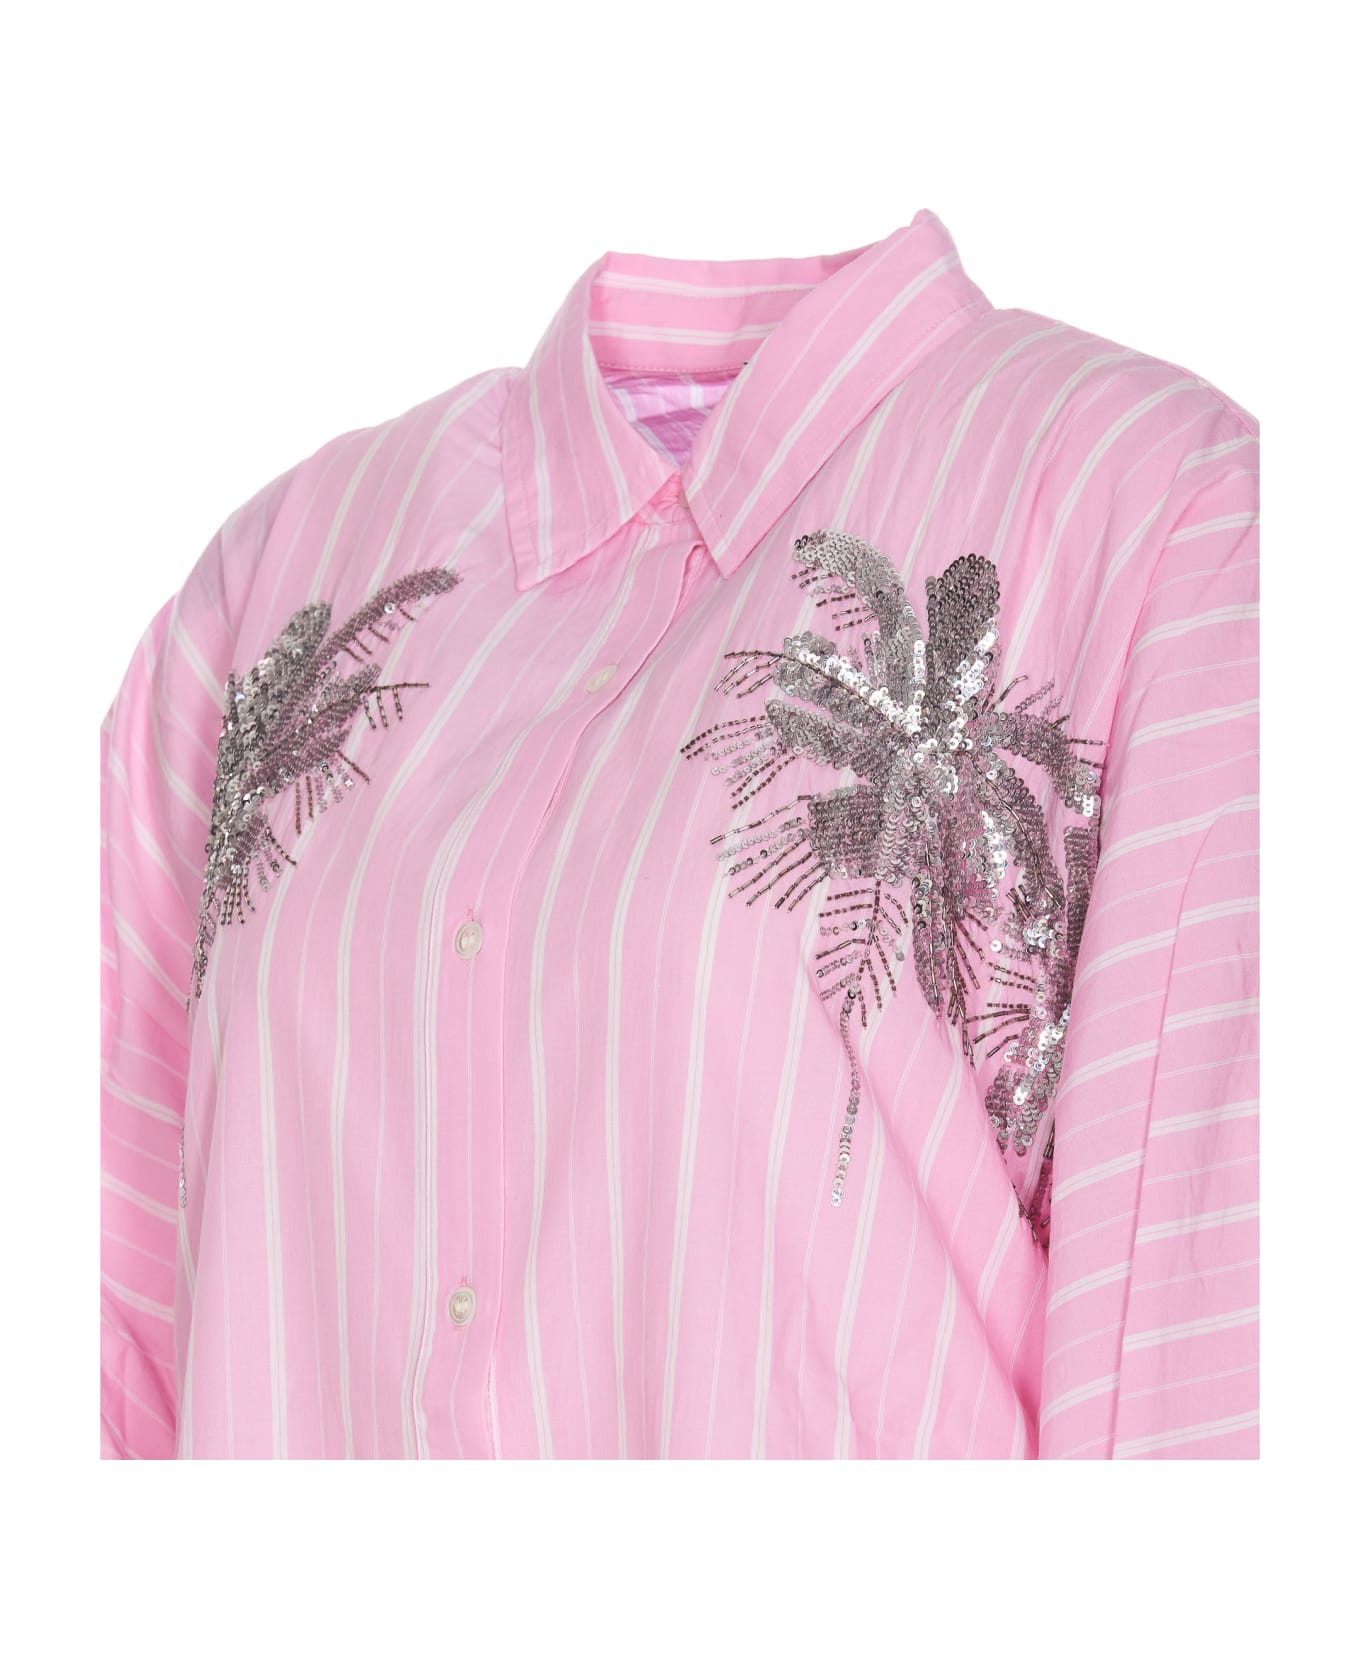 Essentiel Antwerp Frilled Dress - Pink シャツ